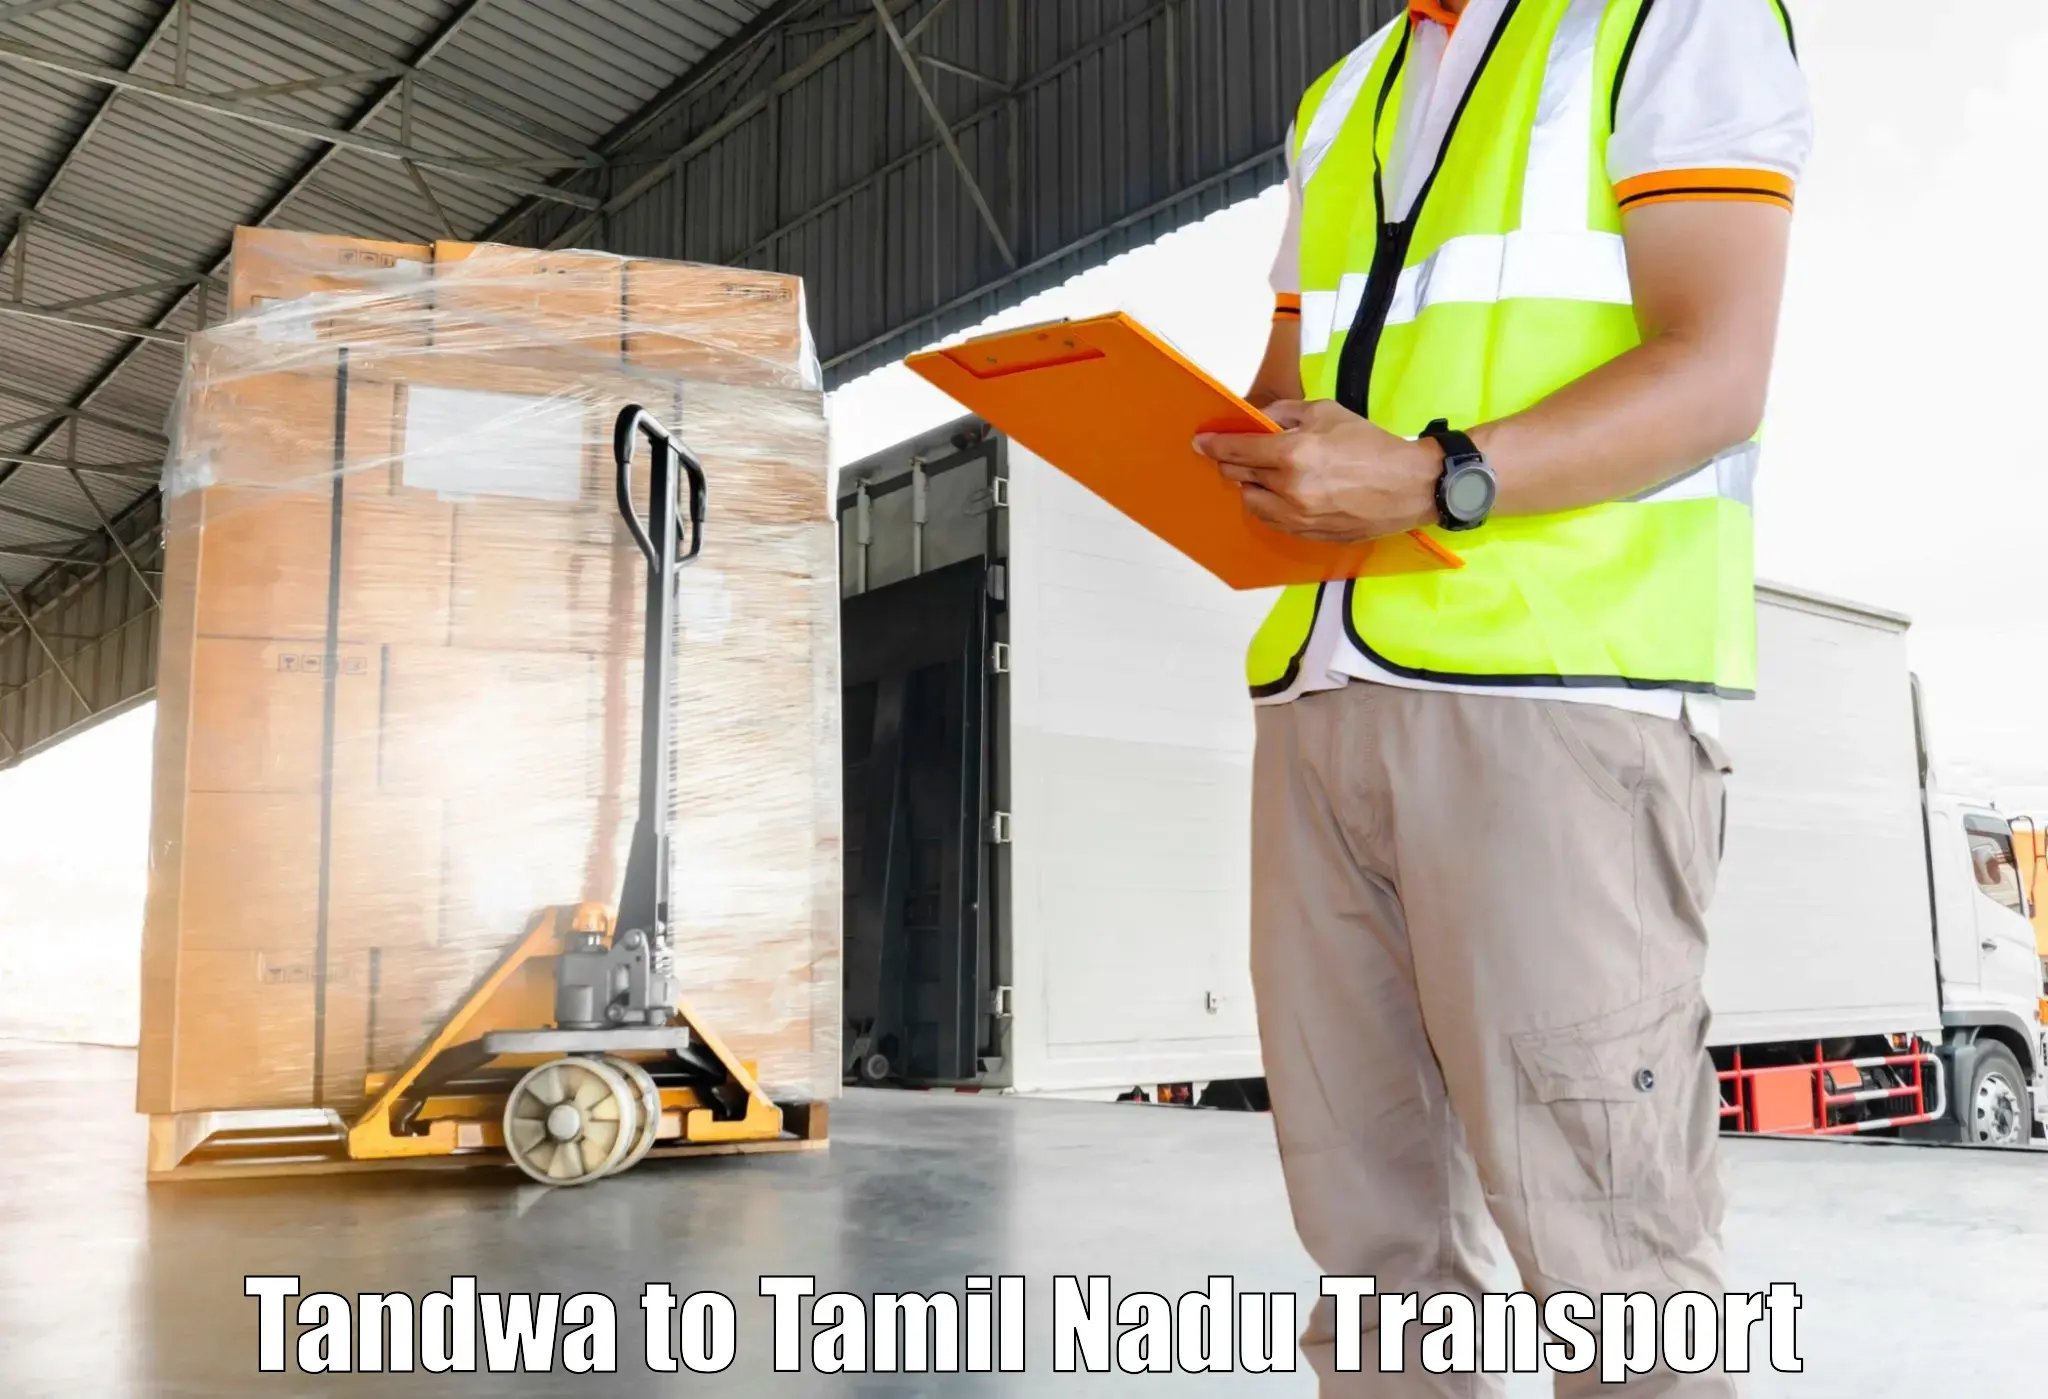 Road transport services Tandwa to Sriperumbudur